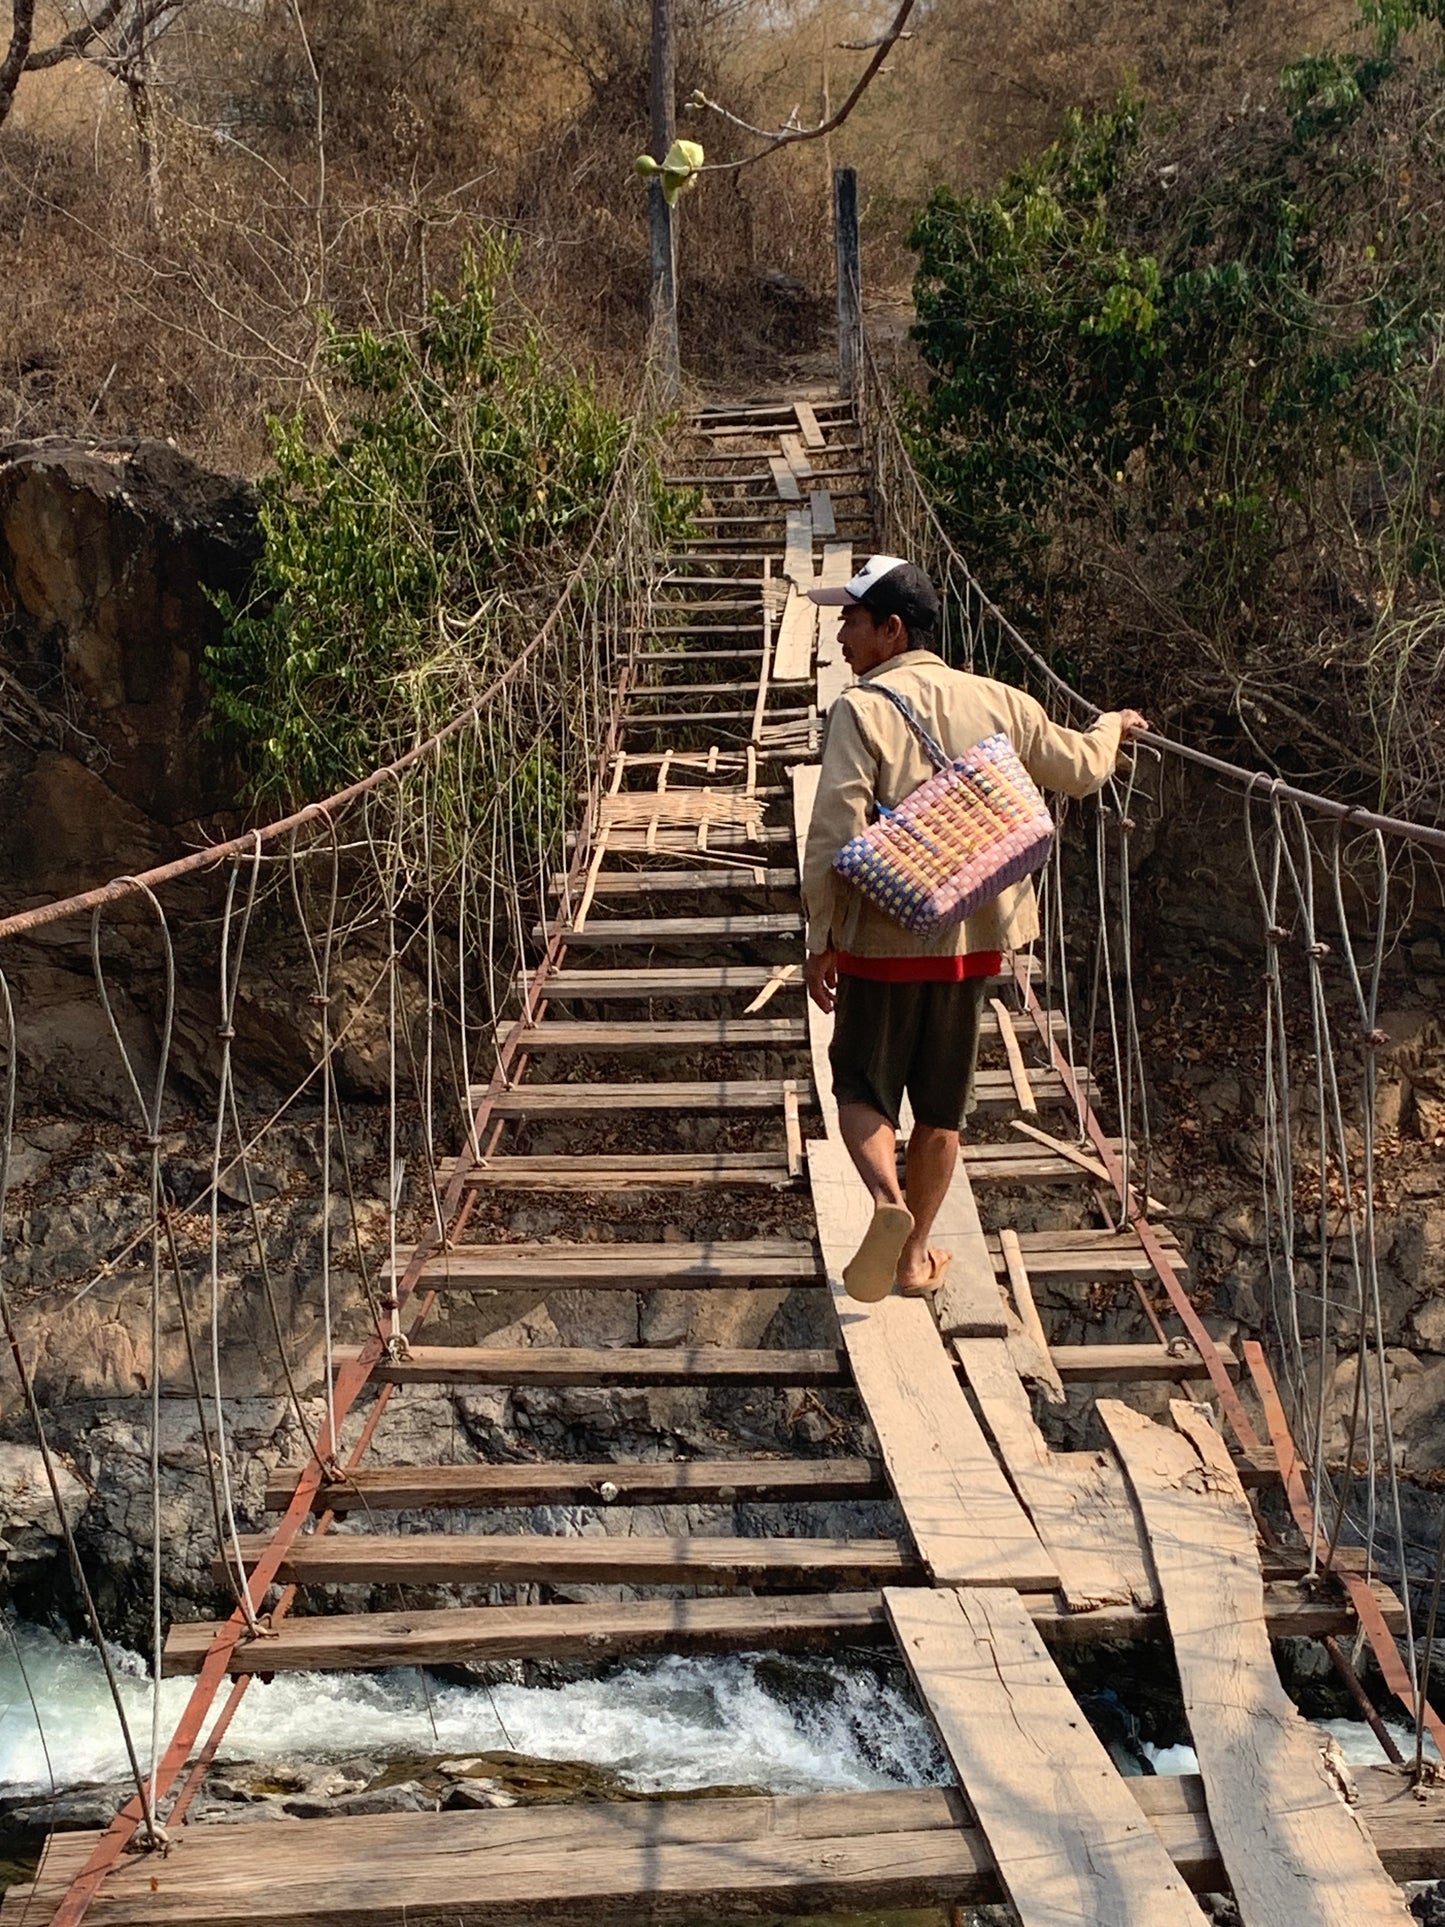 A7E: (5 NGÀY) Khám phá Lào: Cuộc phiêu lưu đỉnh cao qua các vòng Pakse, chèo thuyền kayak qua 4000 hòn đảo và khám phá văn hóa hòa nhập